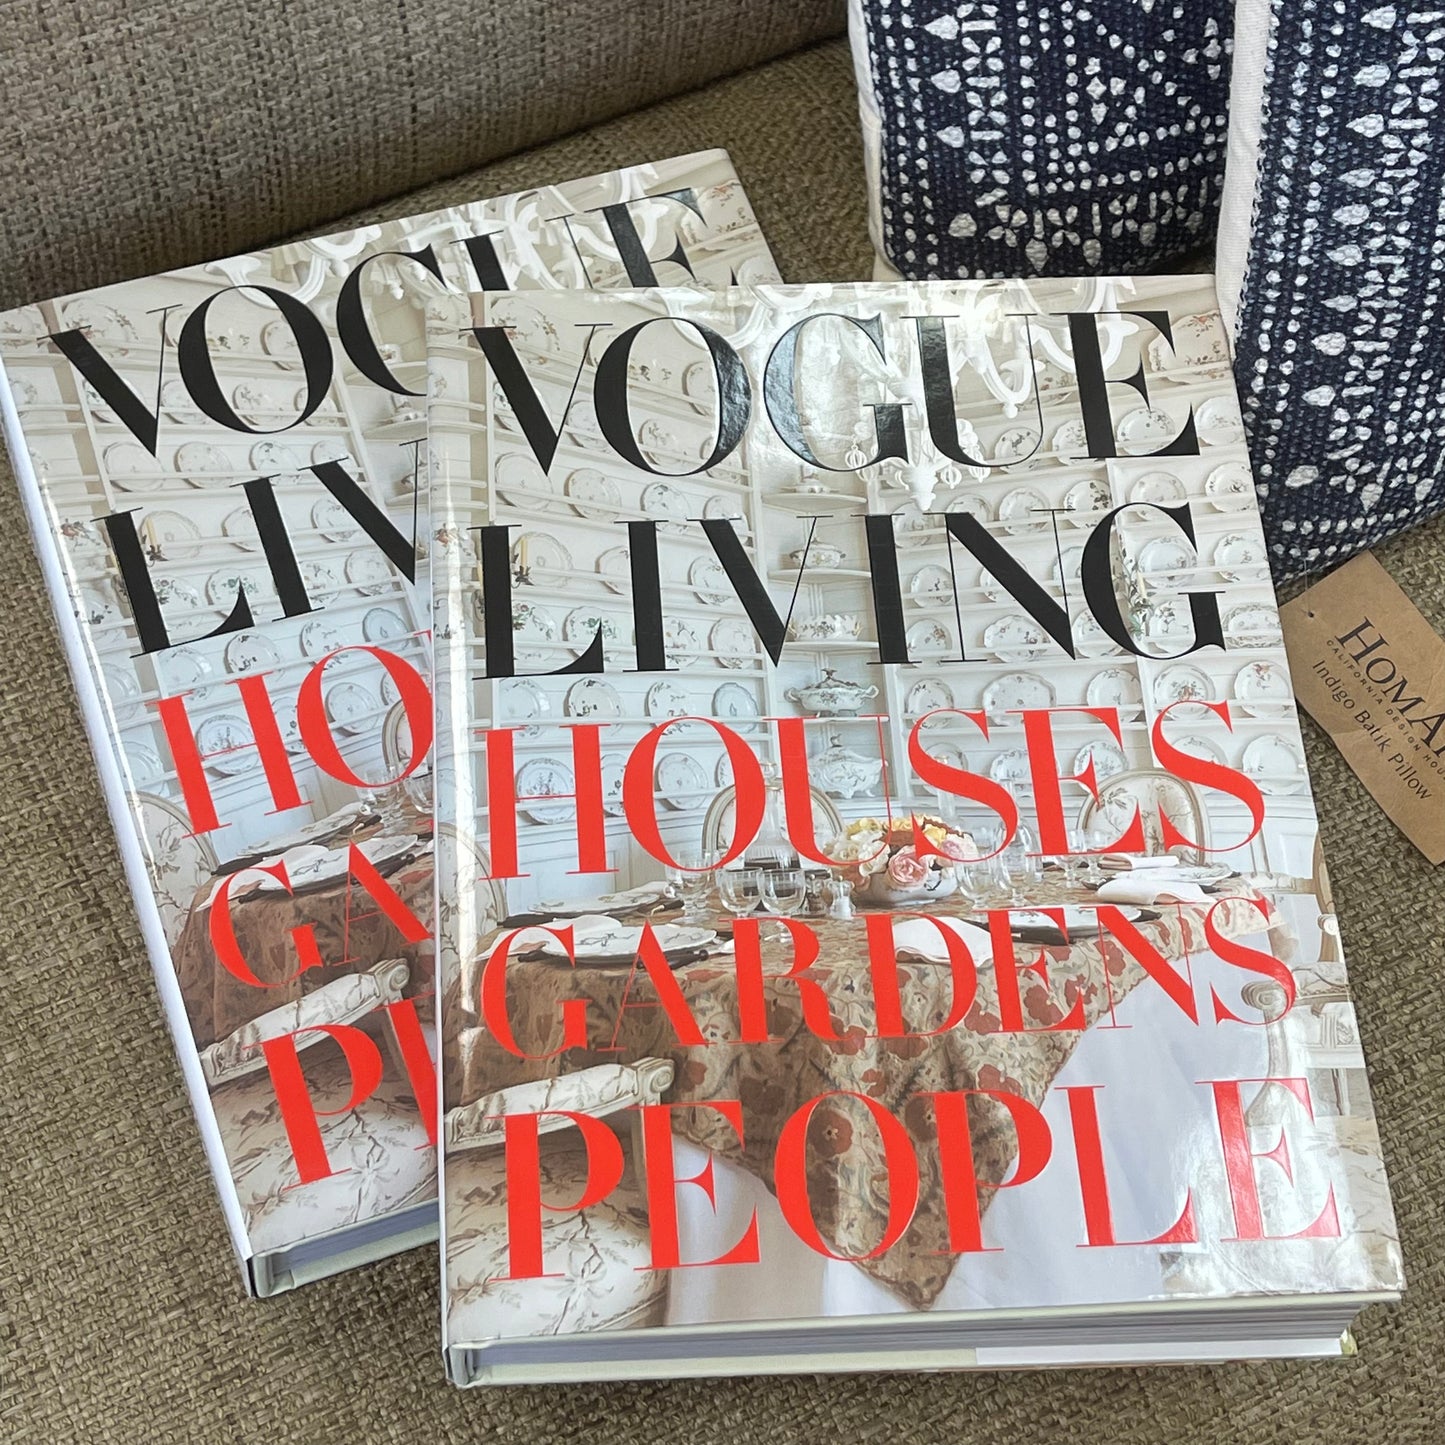 Vogue Living: Houses Gardens Parties